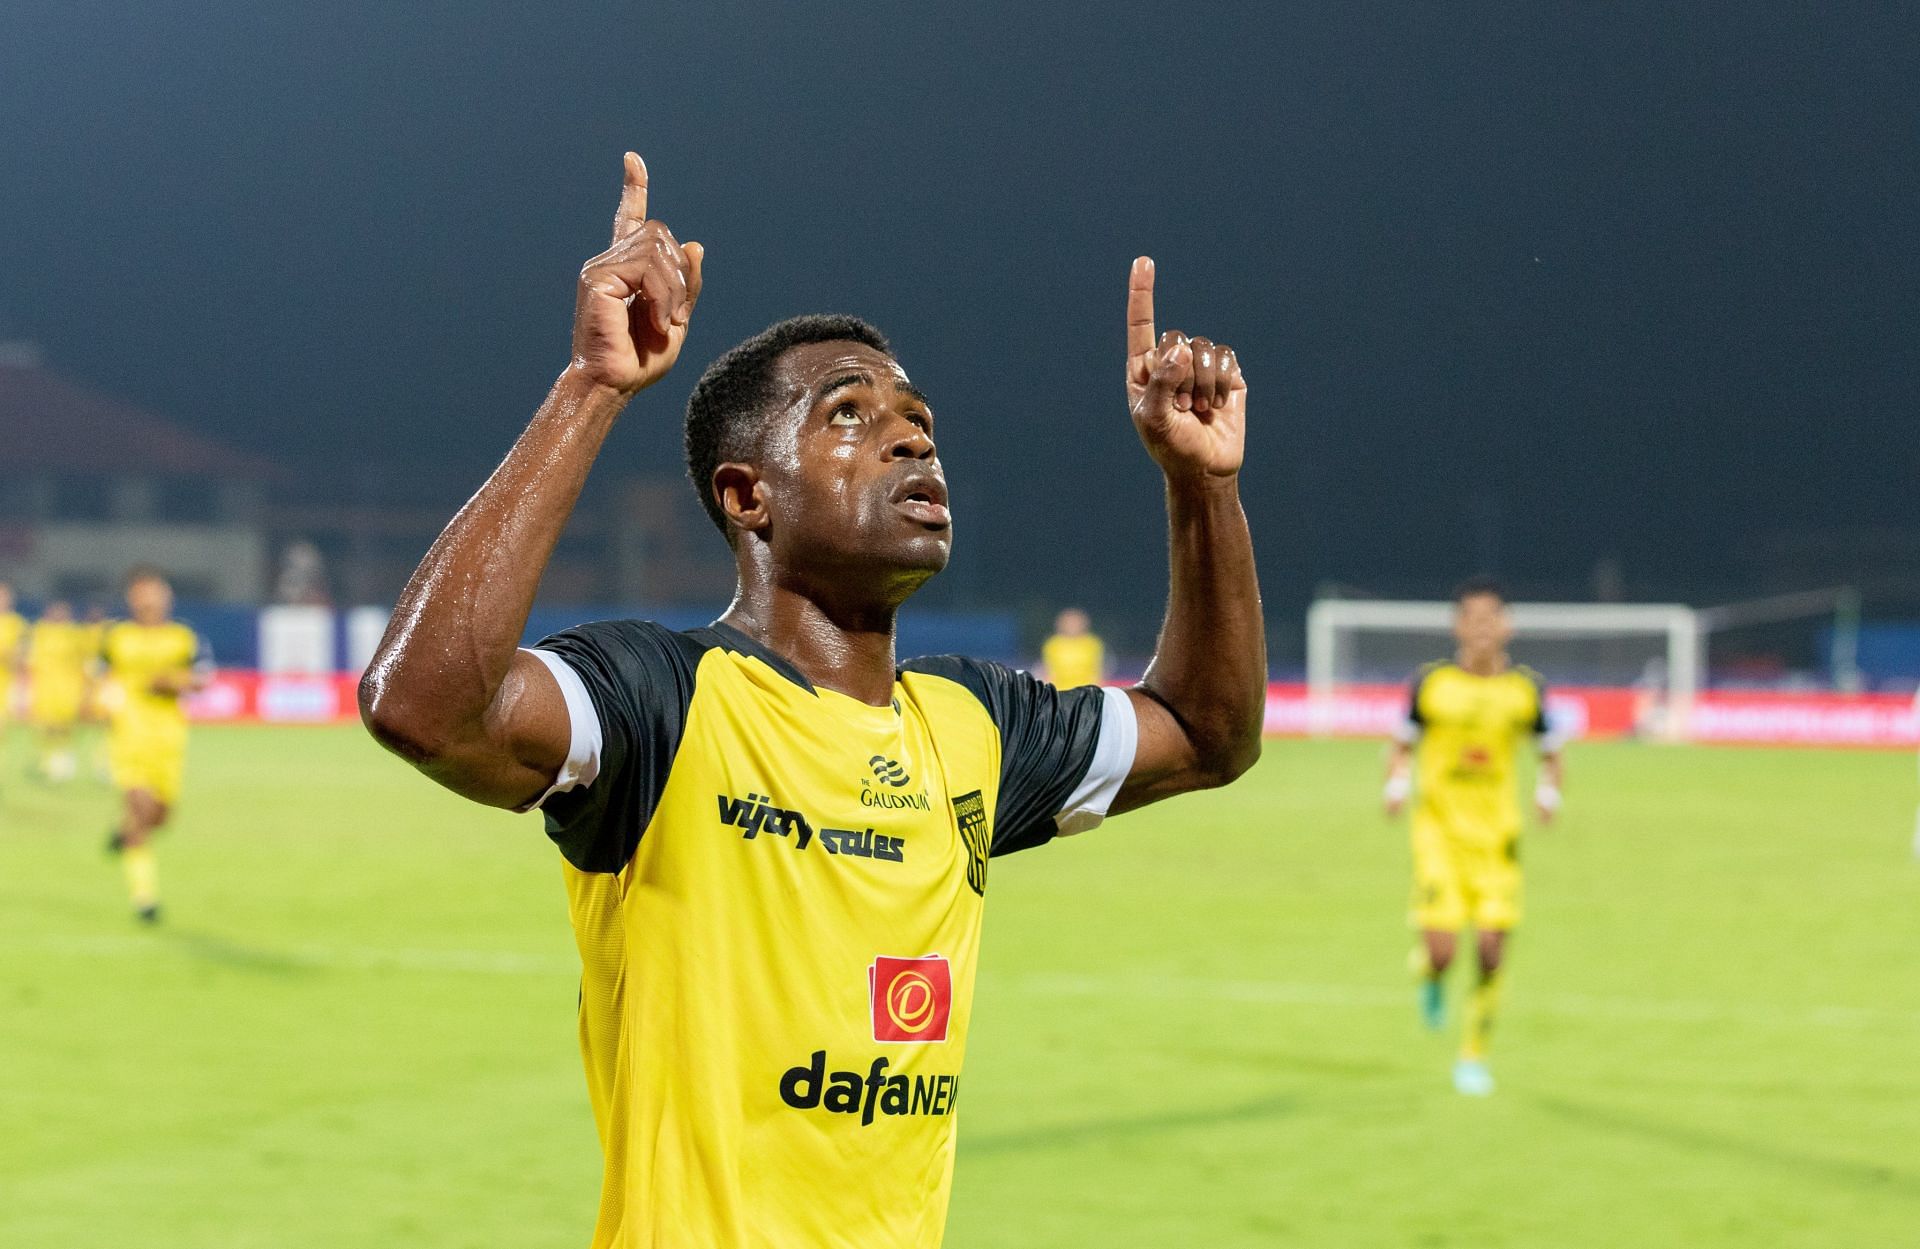 Bartholomew Ogbeche celebrates after scoring against NorthEast United. (Image Courtesy: Twitter/IndSuperLeague)